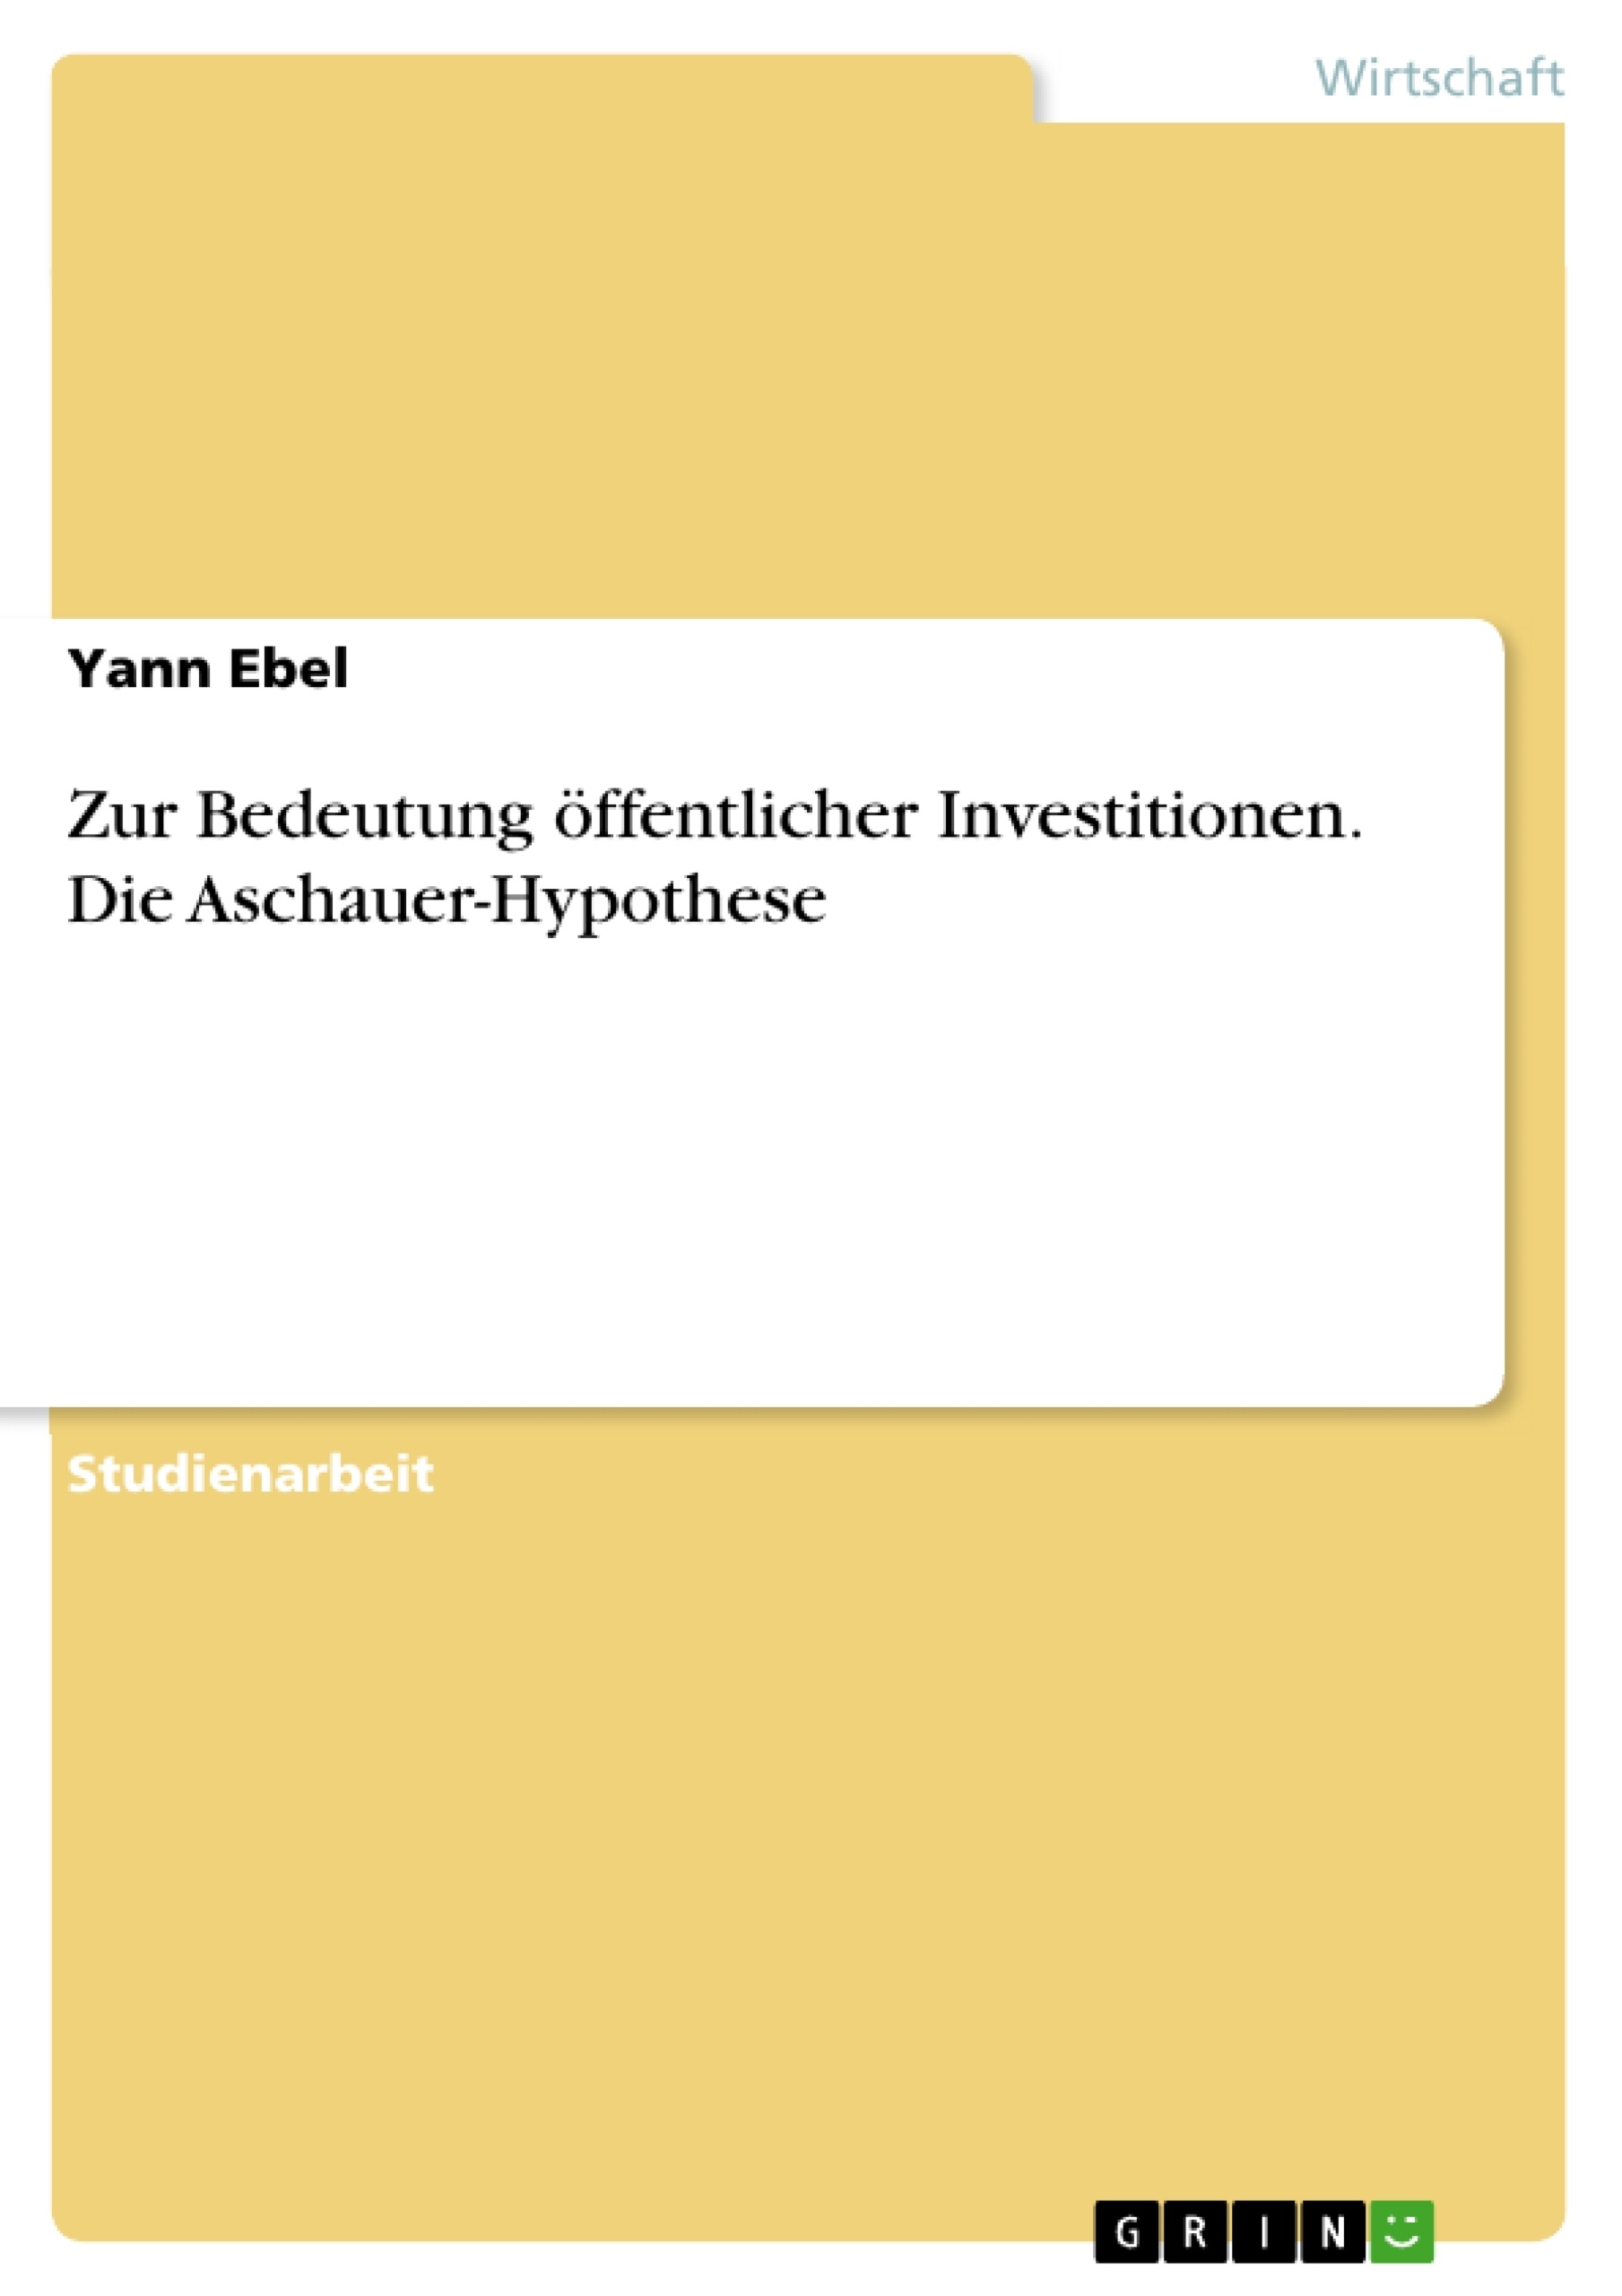 Titre: Zur Bedeutung öffentlicher Investitionen. Die Aschauer-Hypothese